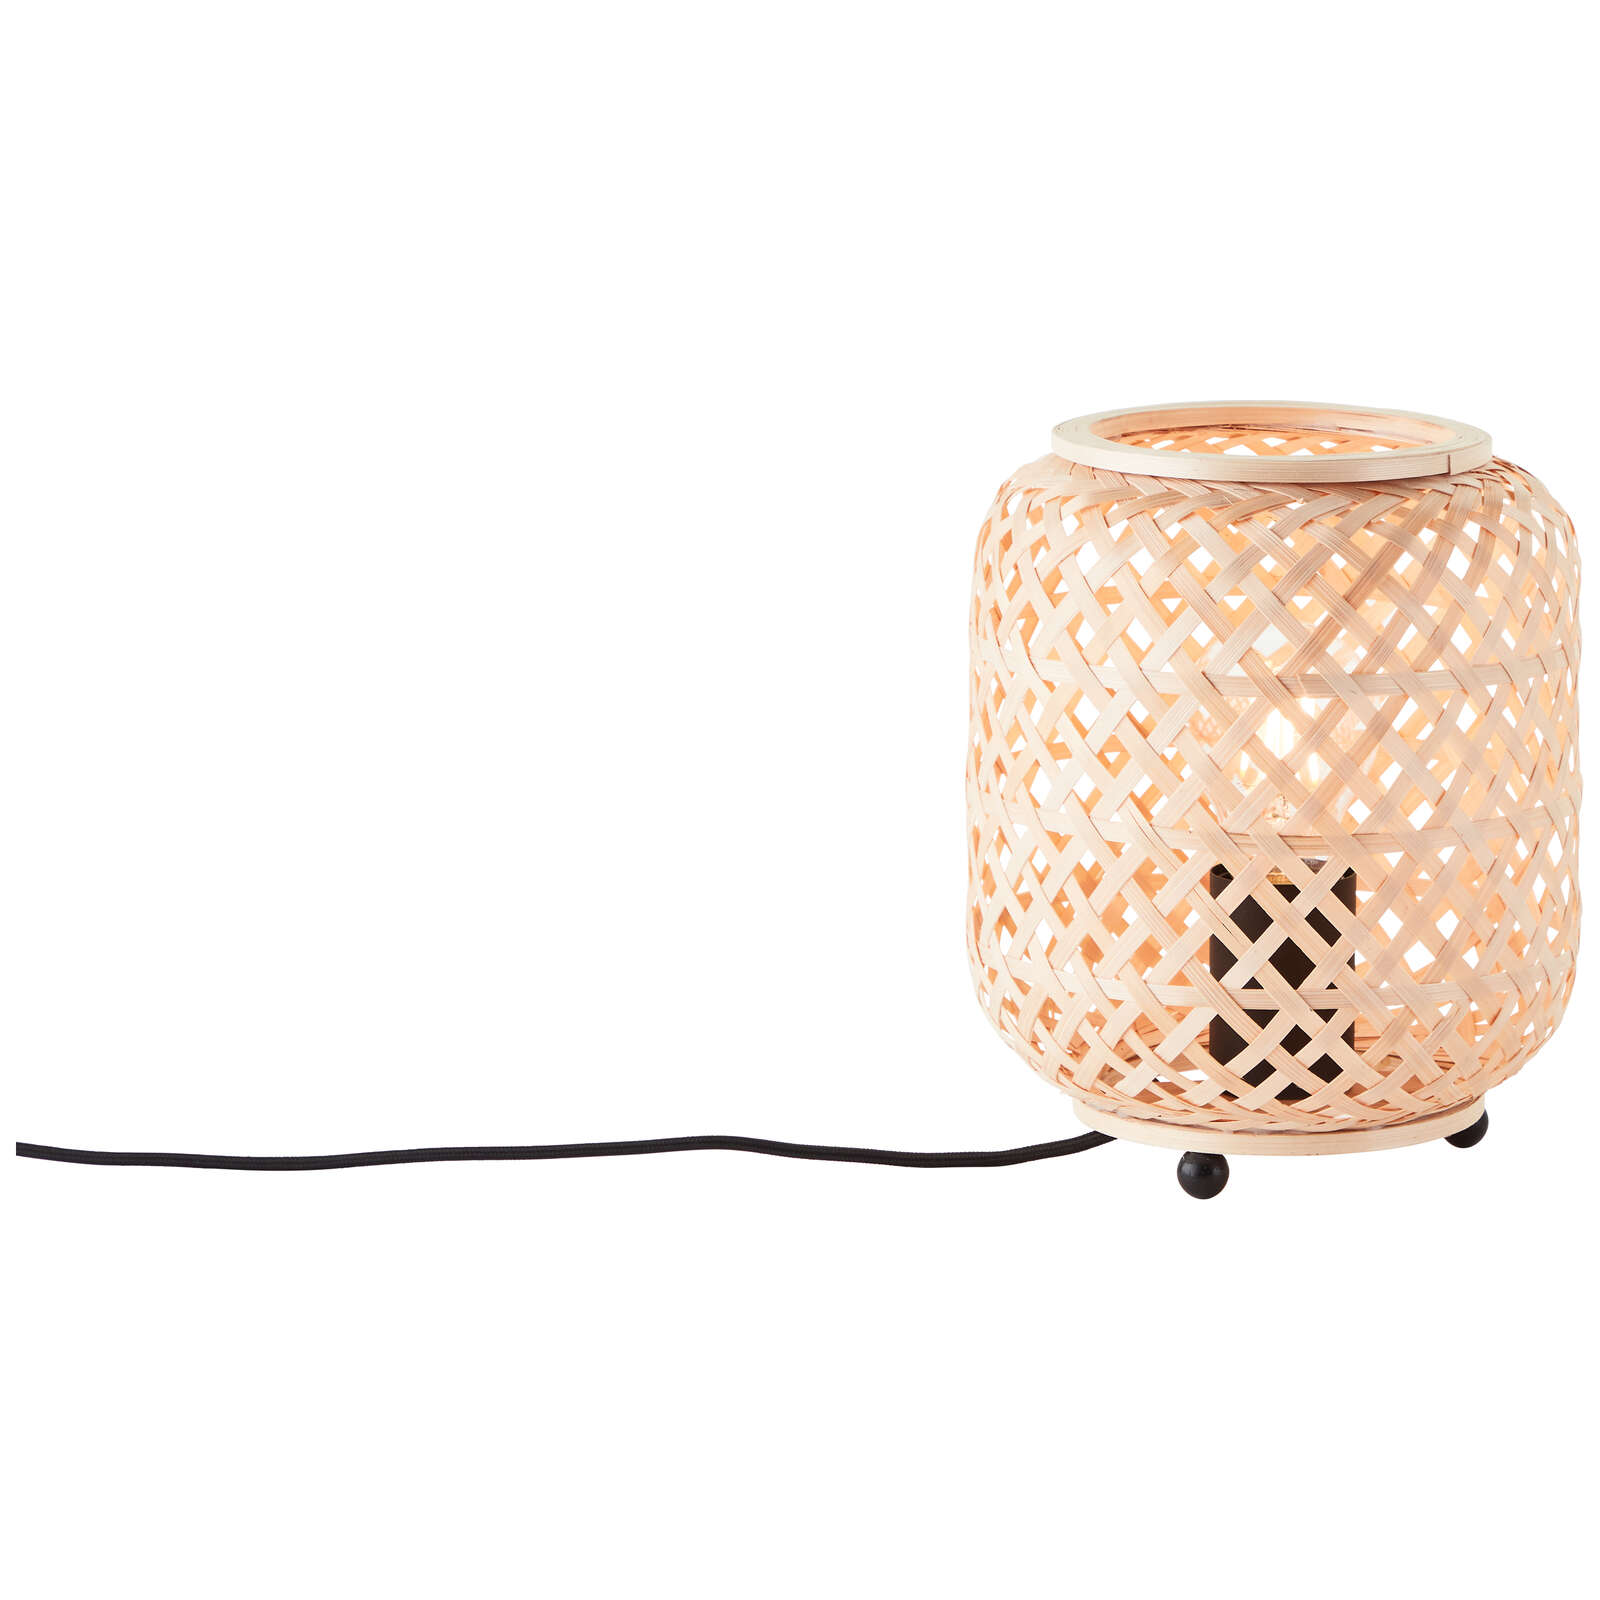             Lampe de table en bambou - Lina - Marron
        